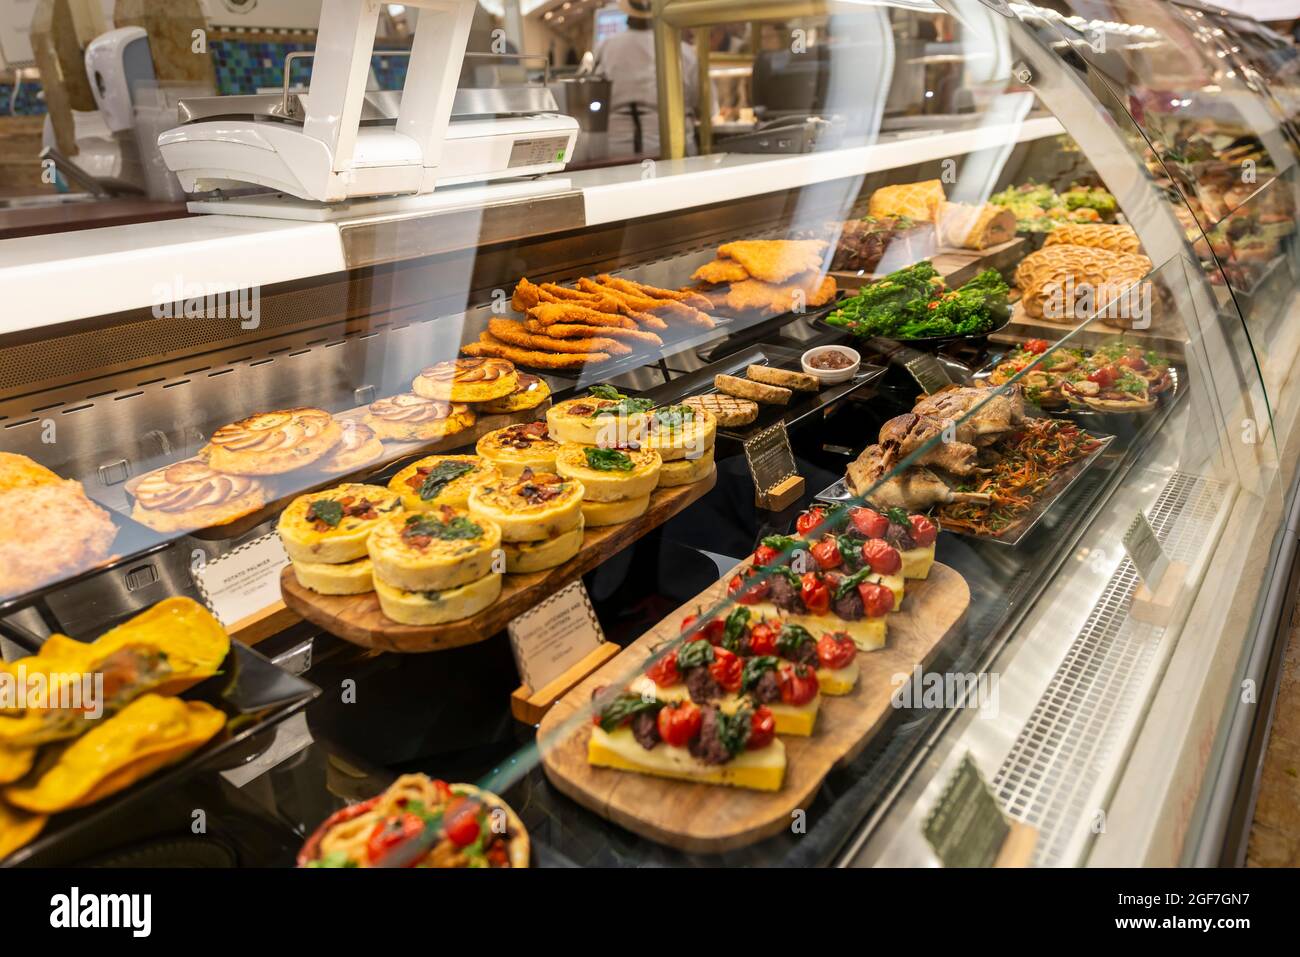 Nourriture dans un étalage, comptoir dans les grands magasins de luxe, Harrods, Londres, Angleterre, Grande-Bretagne Banque D'Images